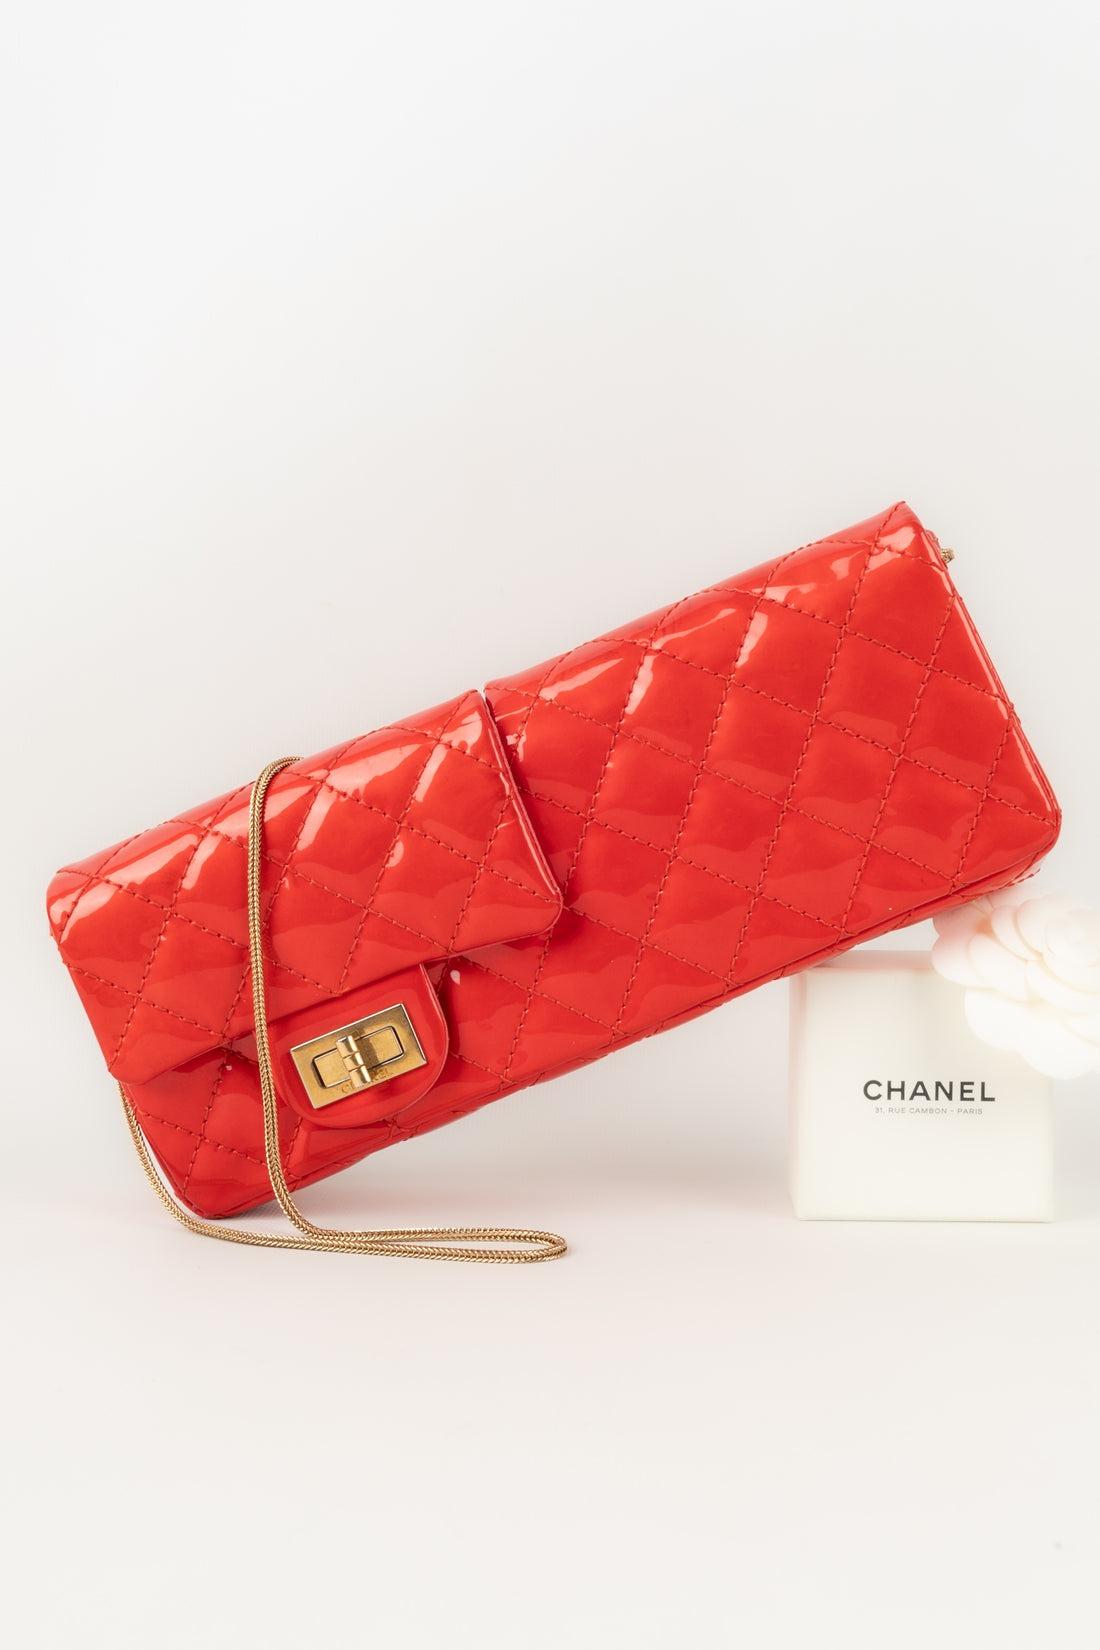 Chanel - (Made in France) Baguette-Tasche mit doppelter Tasche aus rotem Lackleder mit goldenen Metallelementen und einer Seriennummer. Collection'S 2008/2009.

Zusätzliche Informationen:
Zustand: Sehr guter Zustand
Abmessungen: Länge: 24 cm - Höhe: